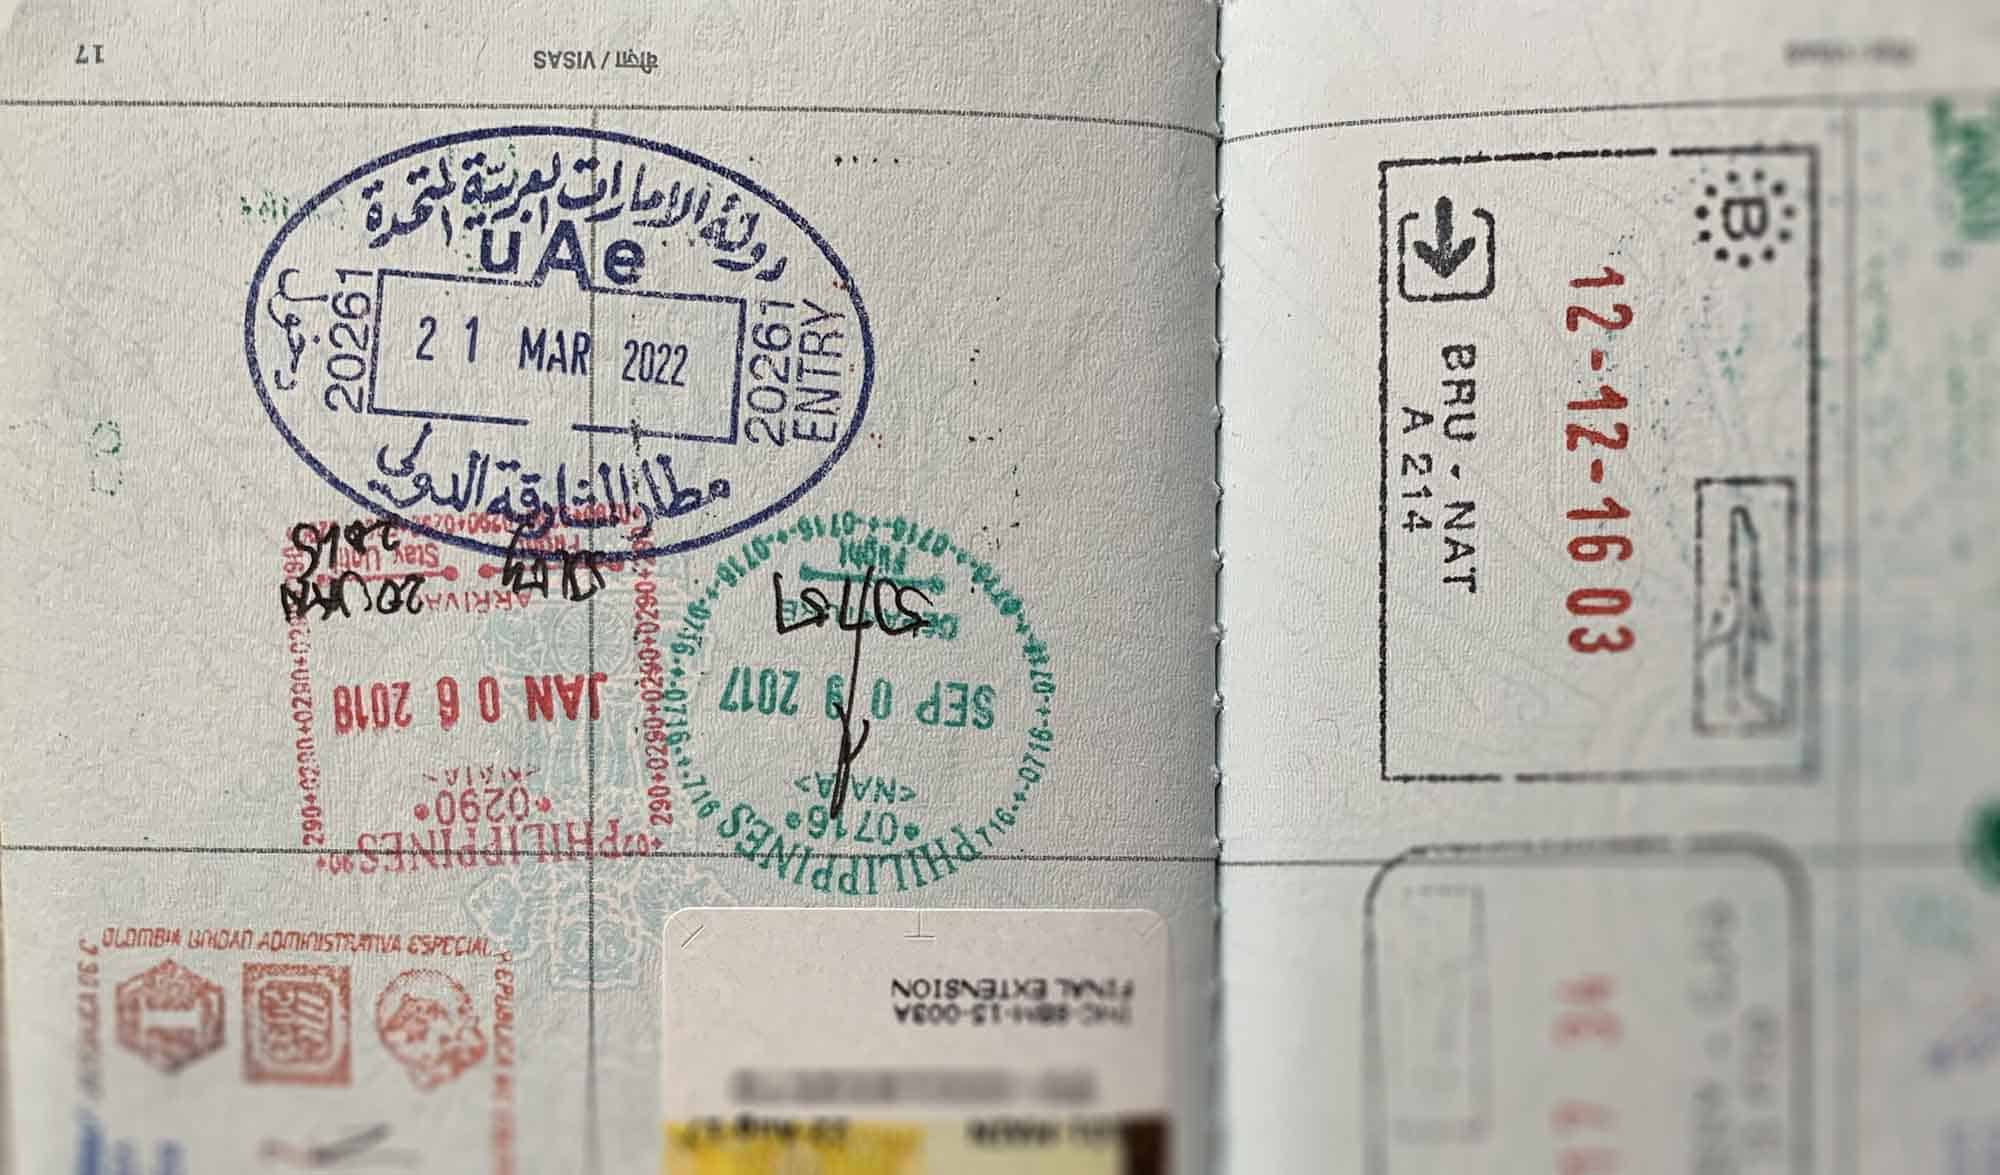 uae visit visa with air ticket